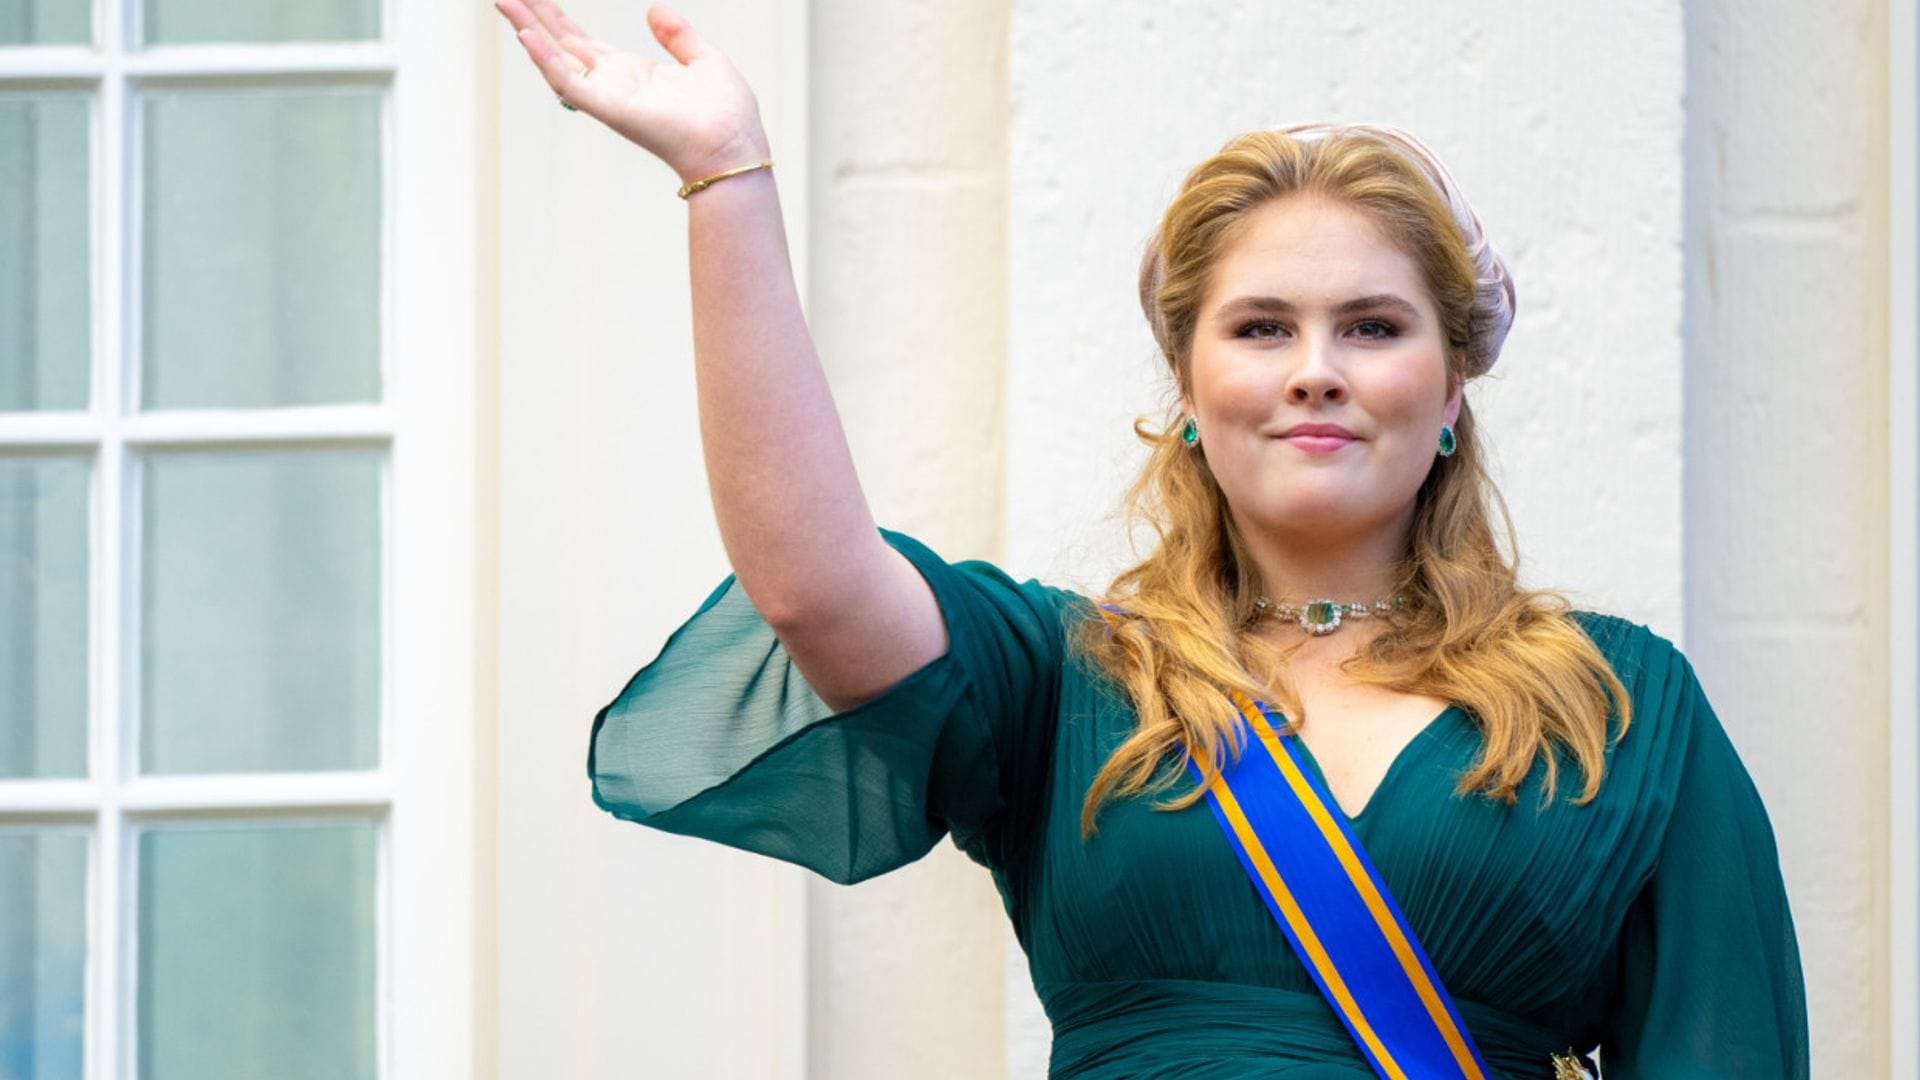 La princesa Amalia de Países Bajos acudirá a la recepción en el Palacio de Buckingham previa a la coronación